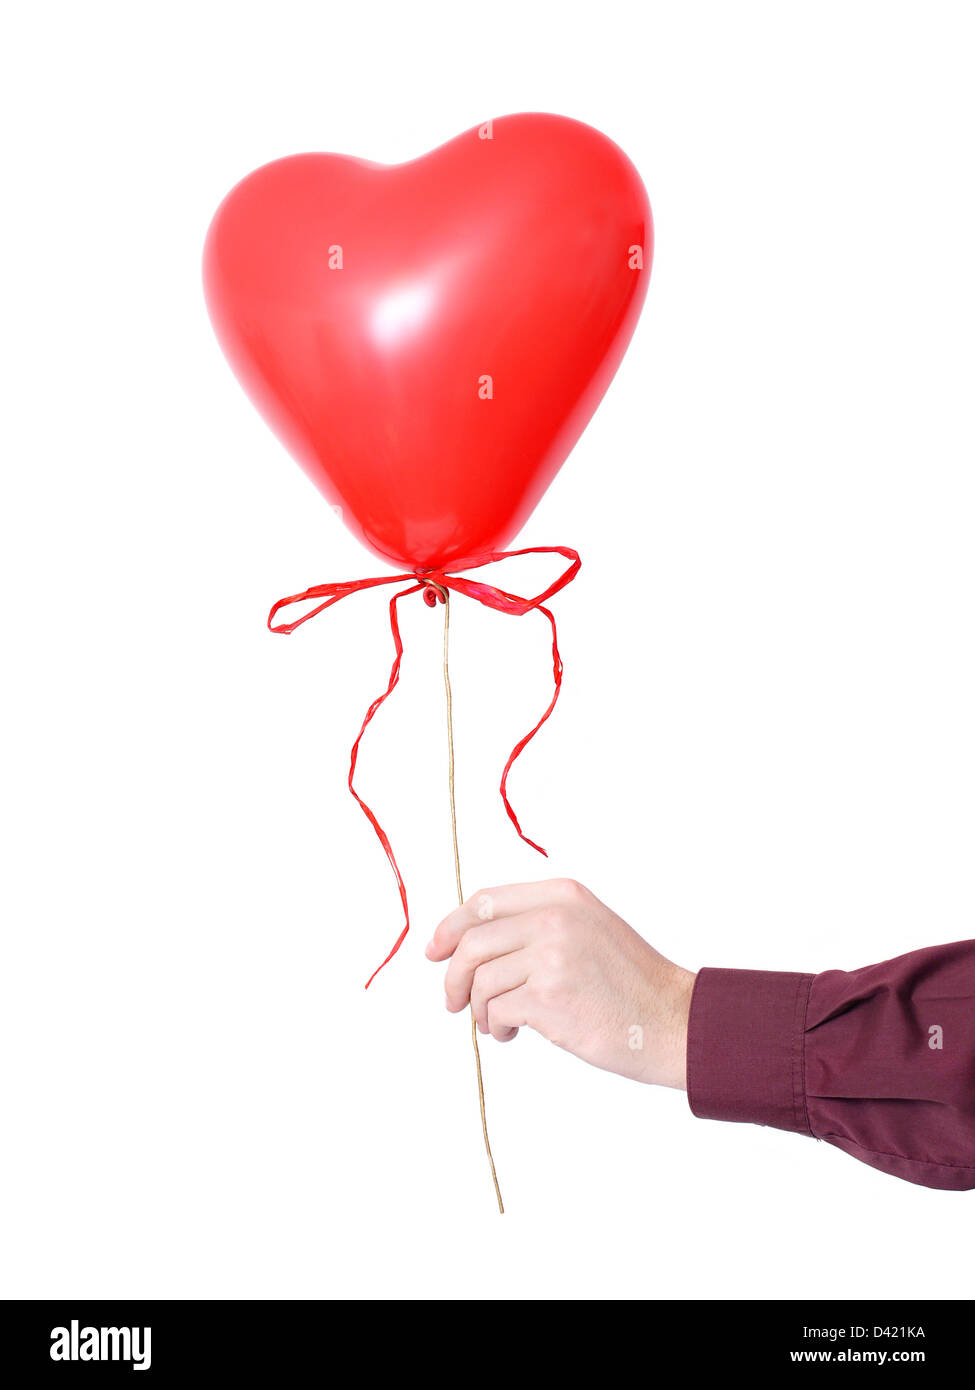 Maschio di mano azienda cuore rosso a forma di palloncino con coccarda su sfondo bianco Foto Stock